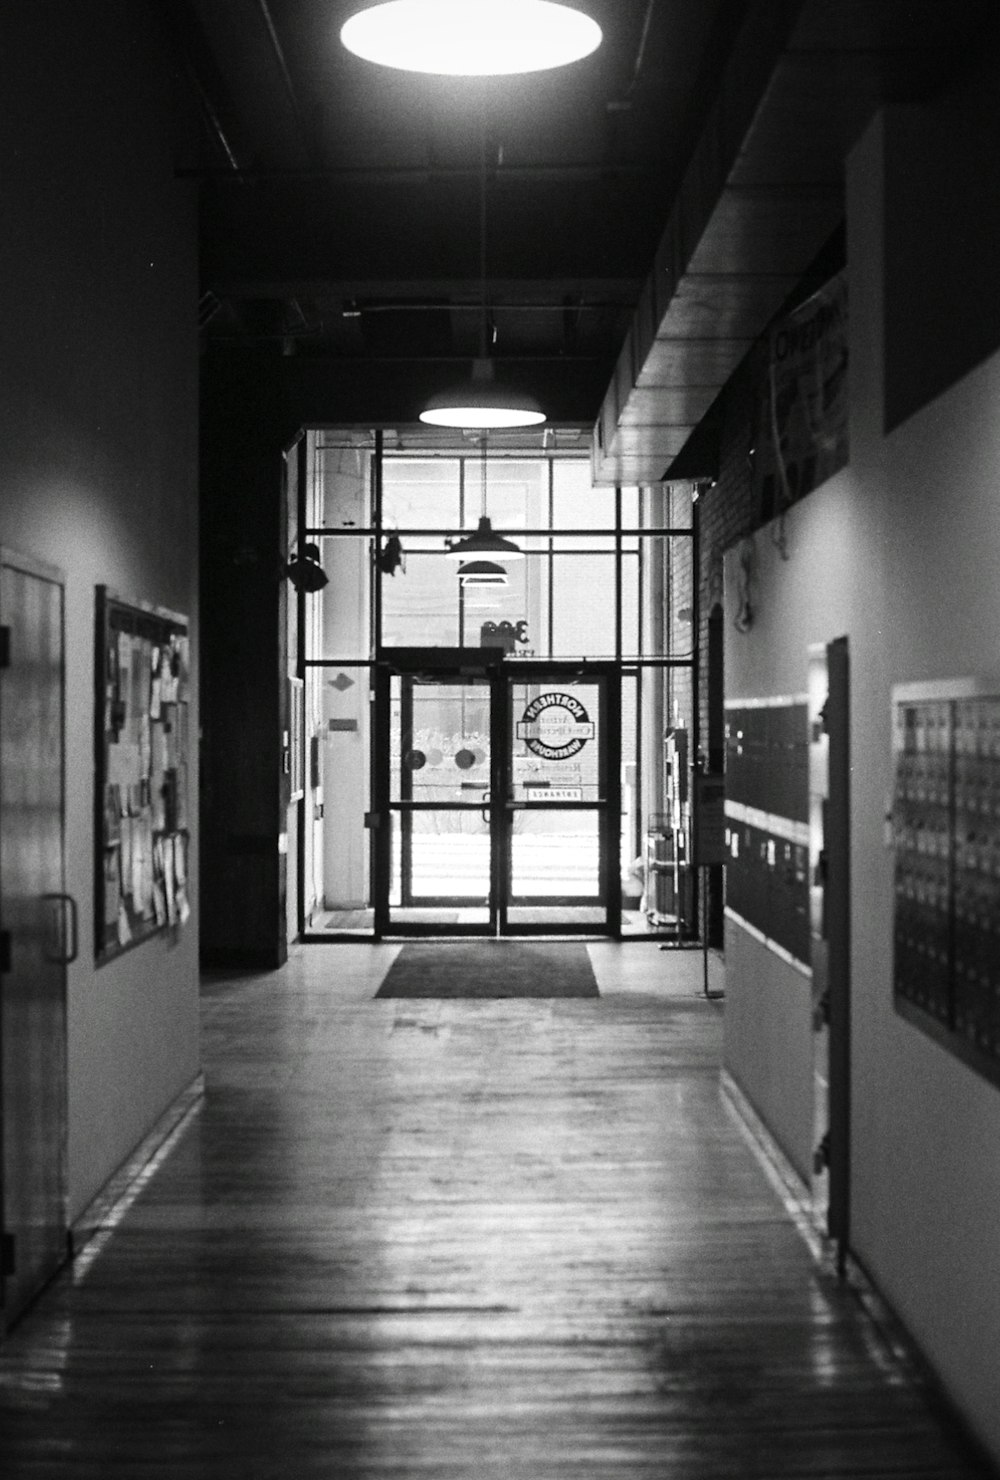 Photographie en niveaux de gris d’un couloir vide